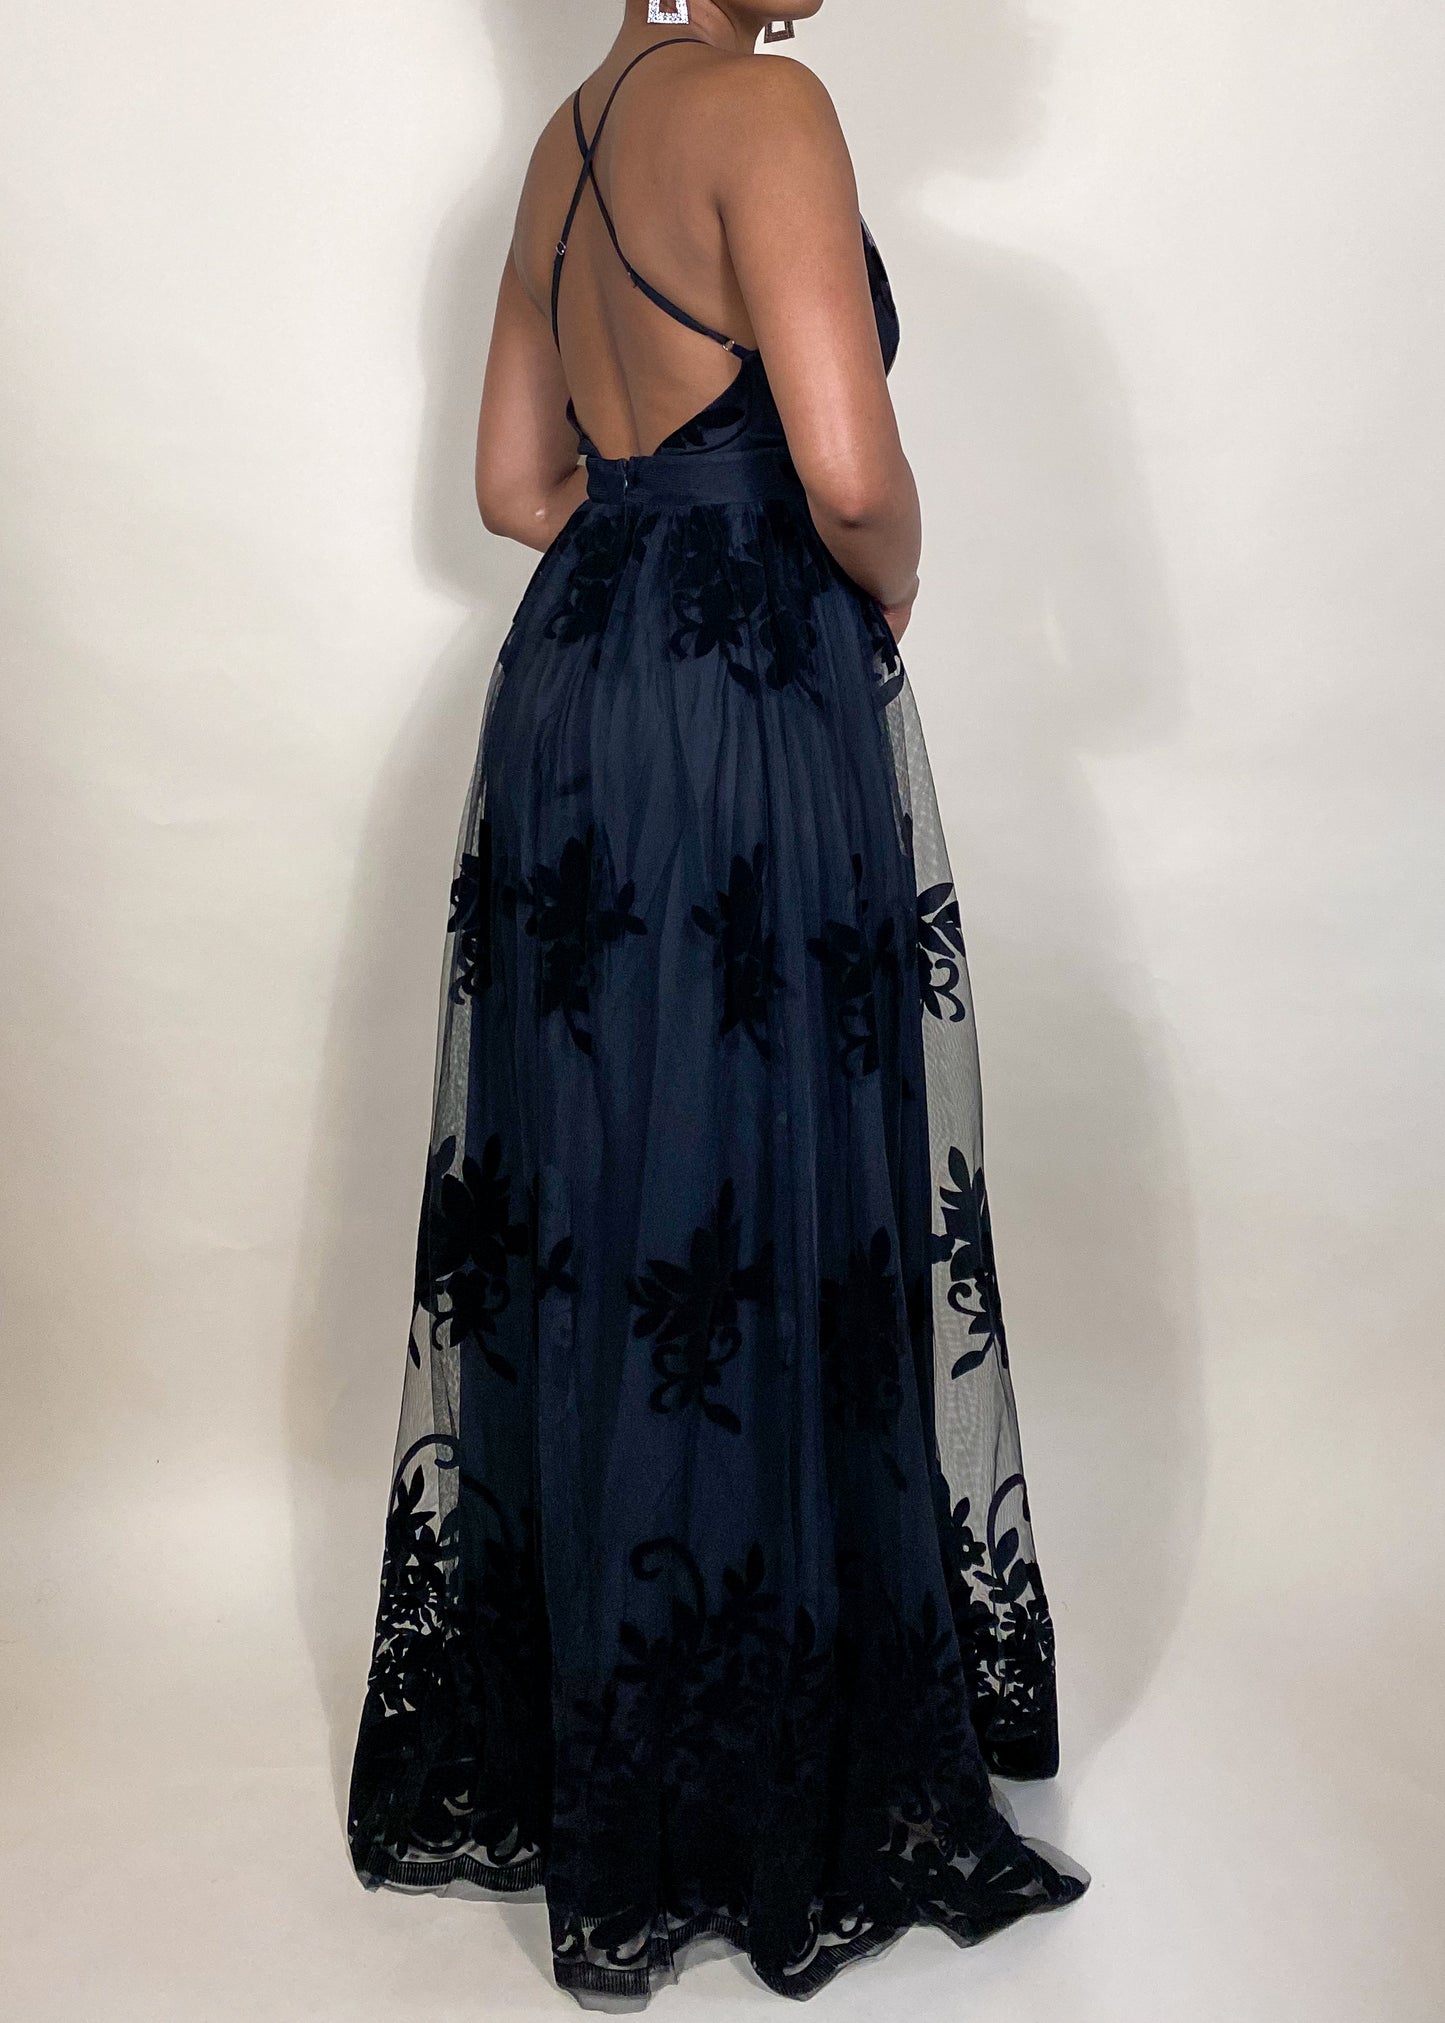 Bryn Black Floral Gown